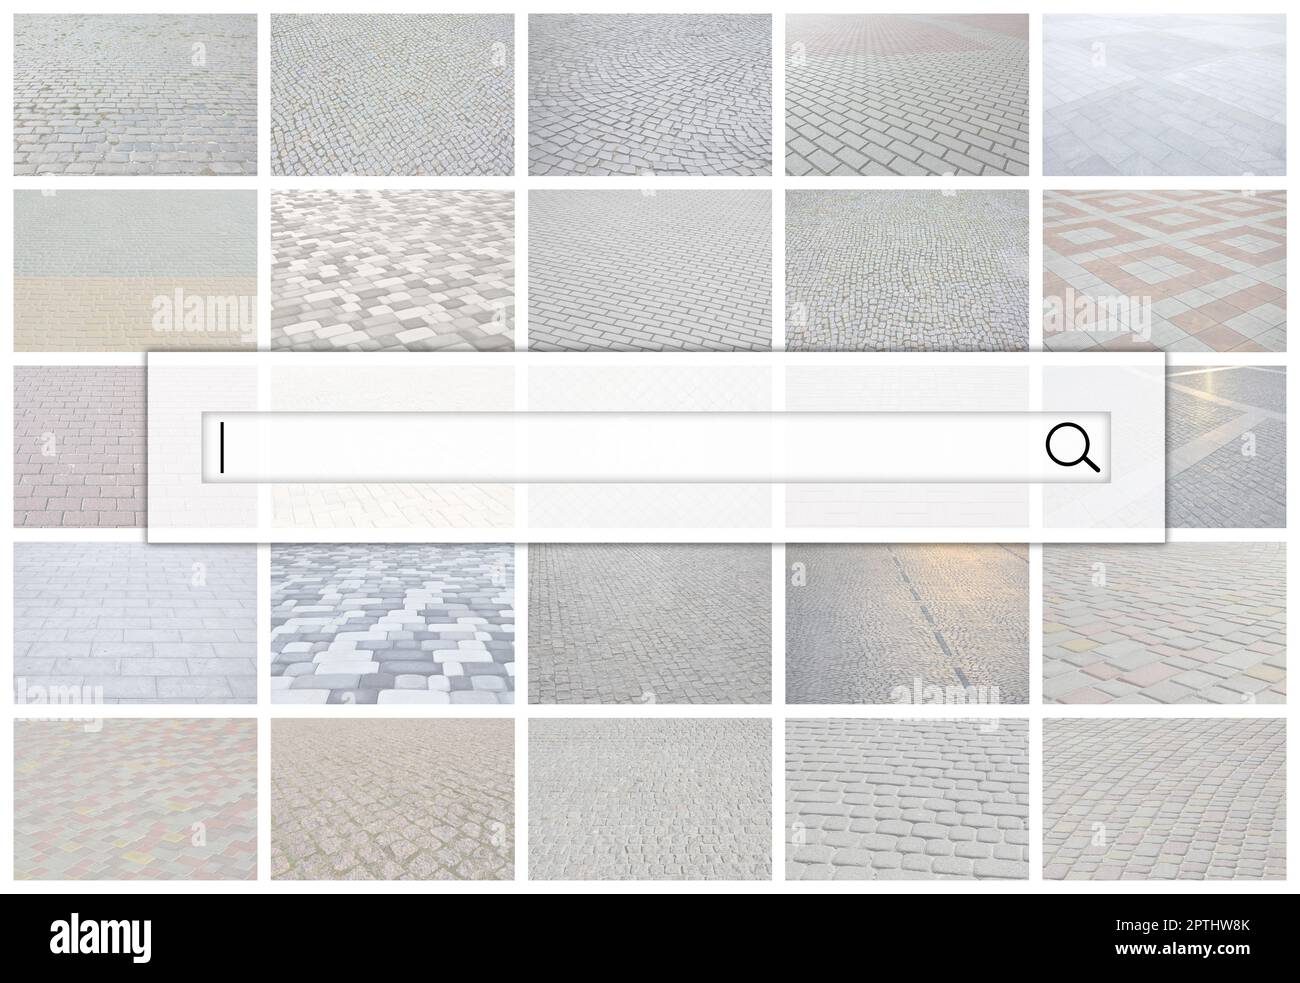 Visualización de la barra de búsqueda en el fondo de un collage de muchas imágenes con fragmentos de baldosas cerca. Conjunto de imágenes con pavimento s Foto de stock